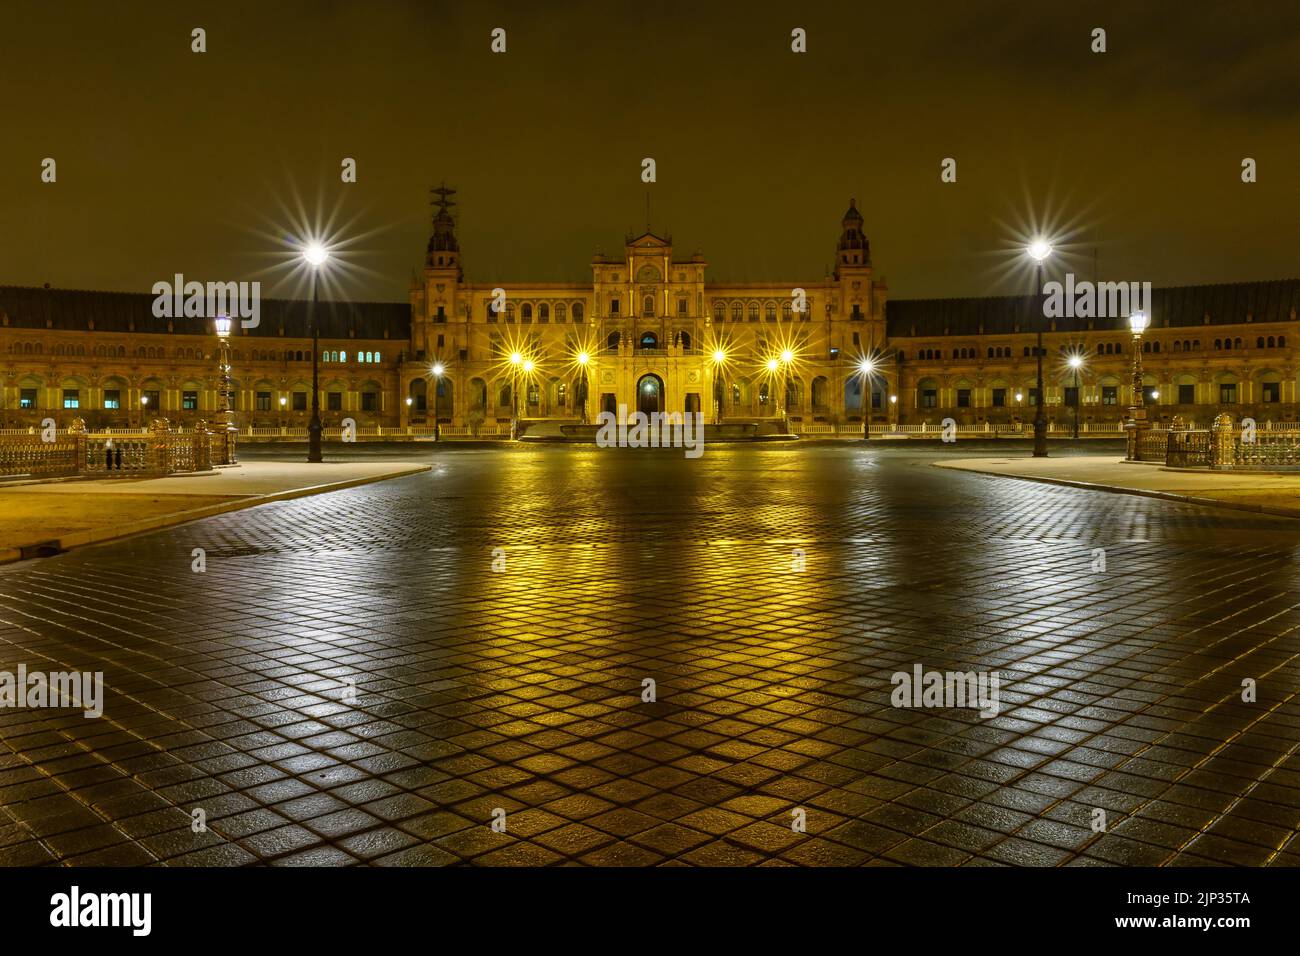 Plaza de España in Sevilla, Nachtszene nach Regen mit Langzeitbelichtung Foto und Reflexionen von Lichtern im Wasser und gepflasterten Straßen. Andalusien. Stockfoto